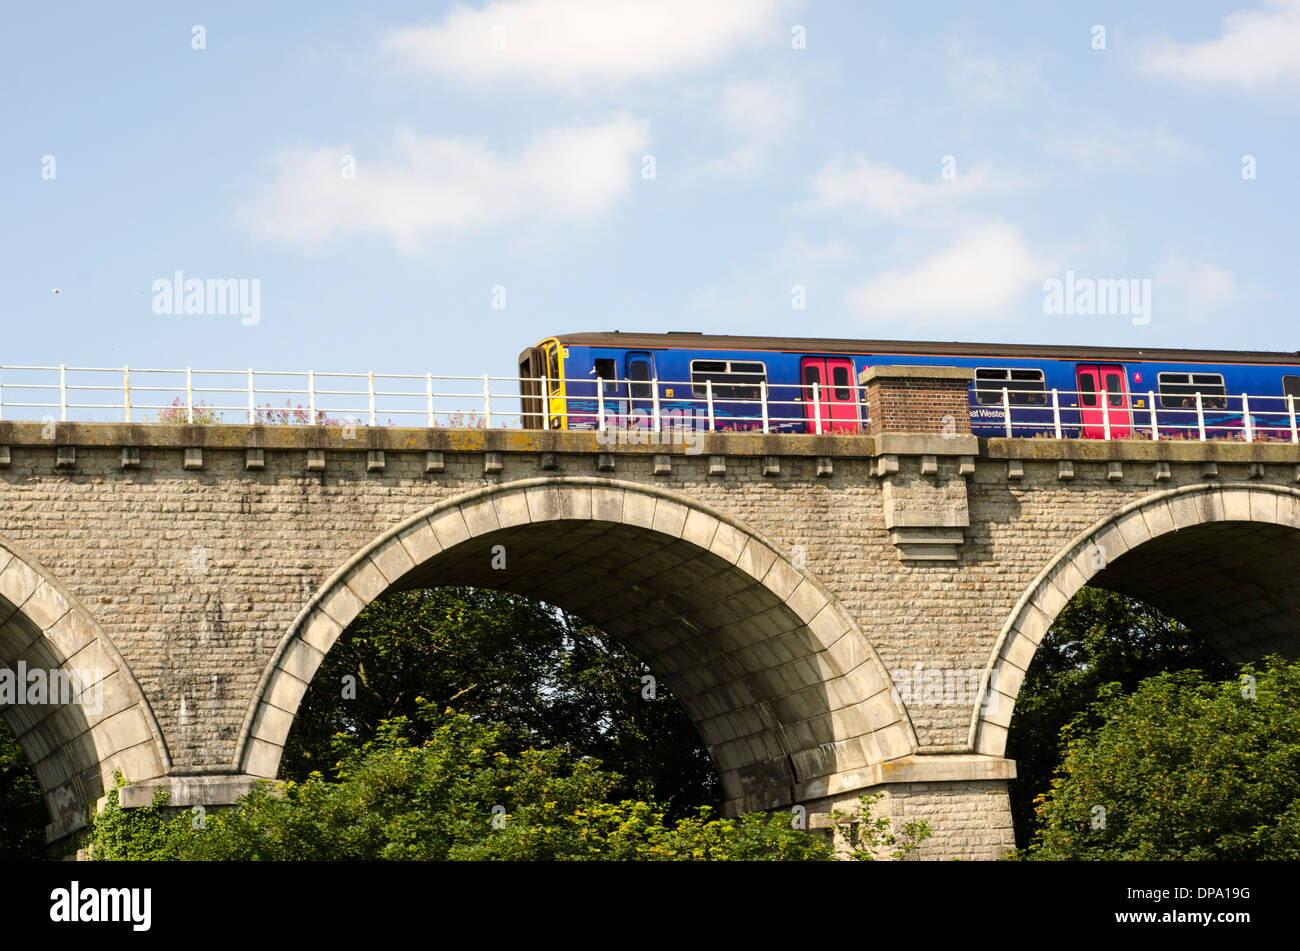 Un train aux couleurs vives plus vieux pont de pierre au-dessus de la cime des arbres, uk Banque D'Images